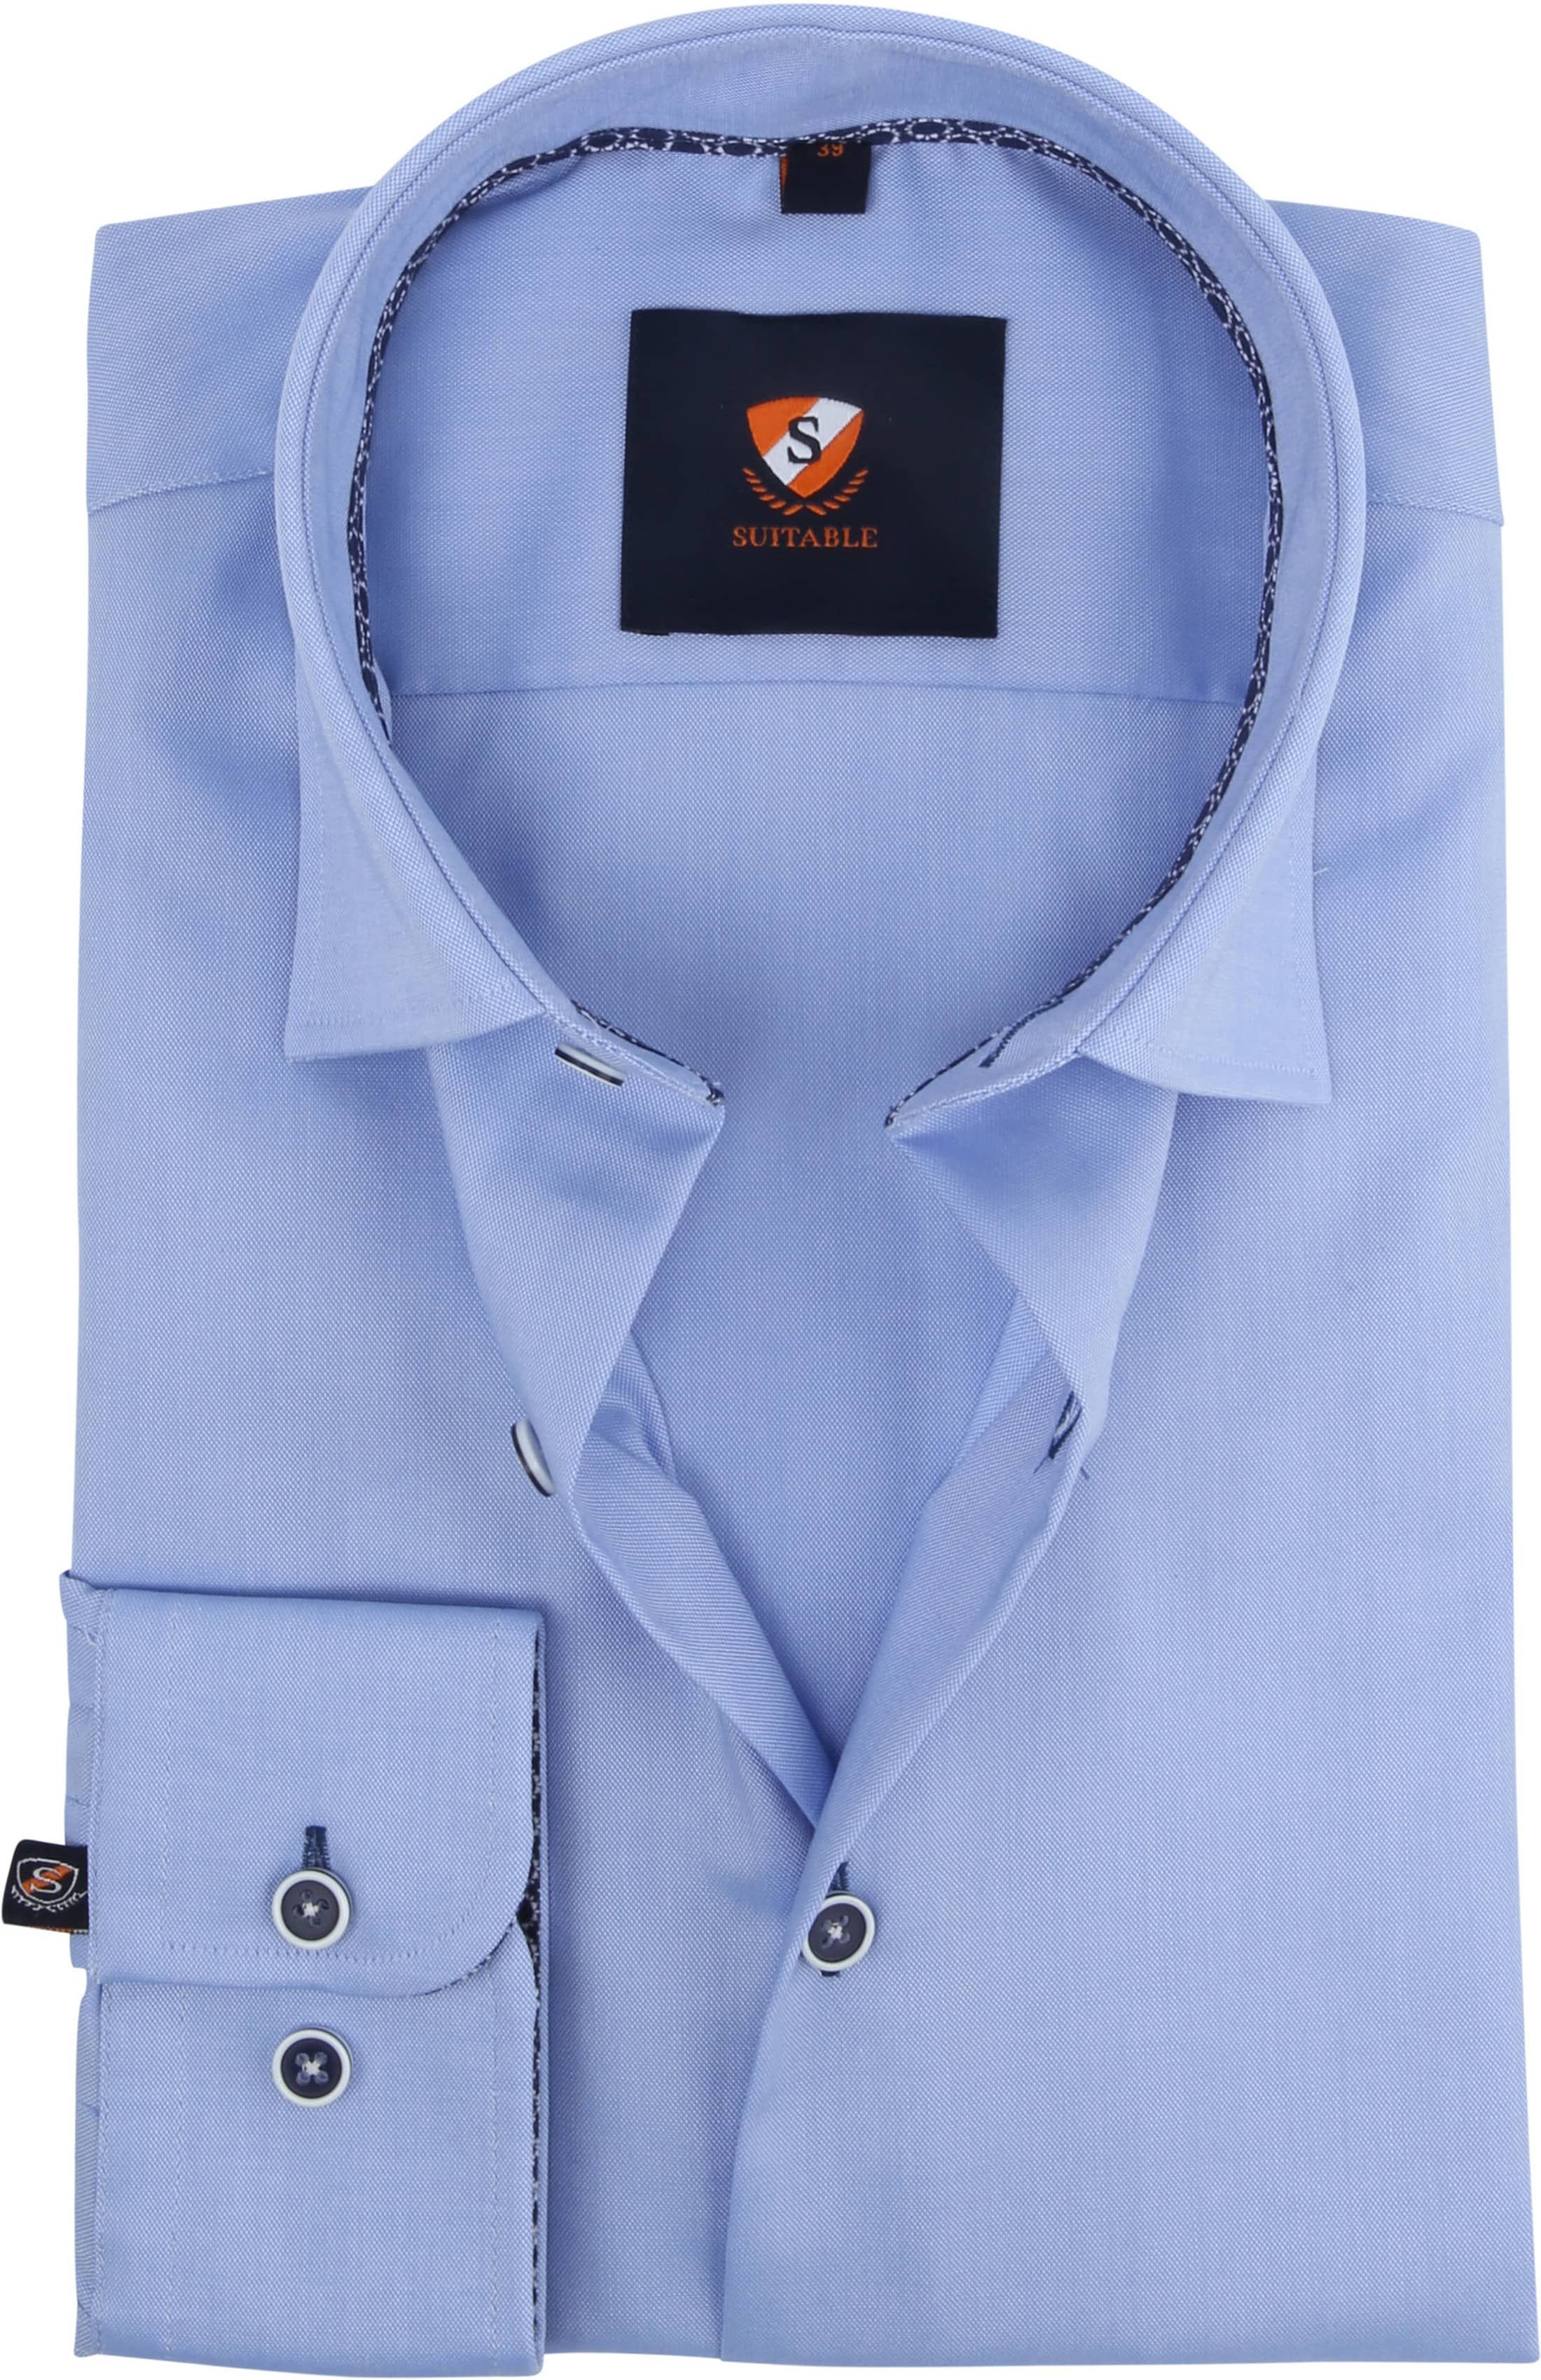 Suitable Oxford Shirt Blue size 15